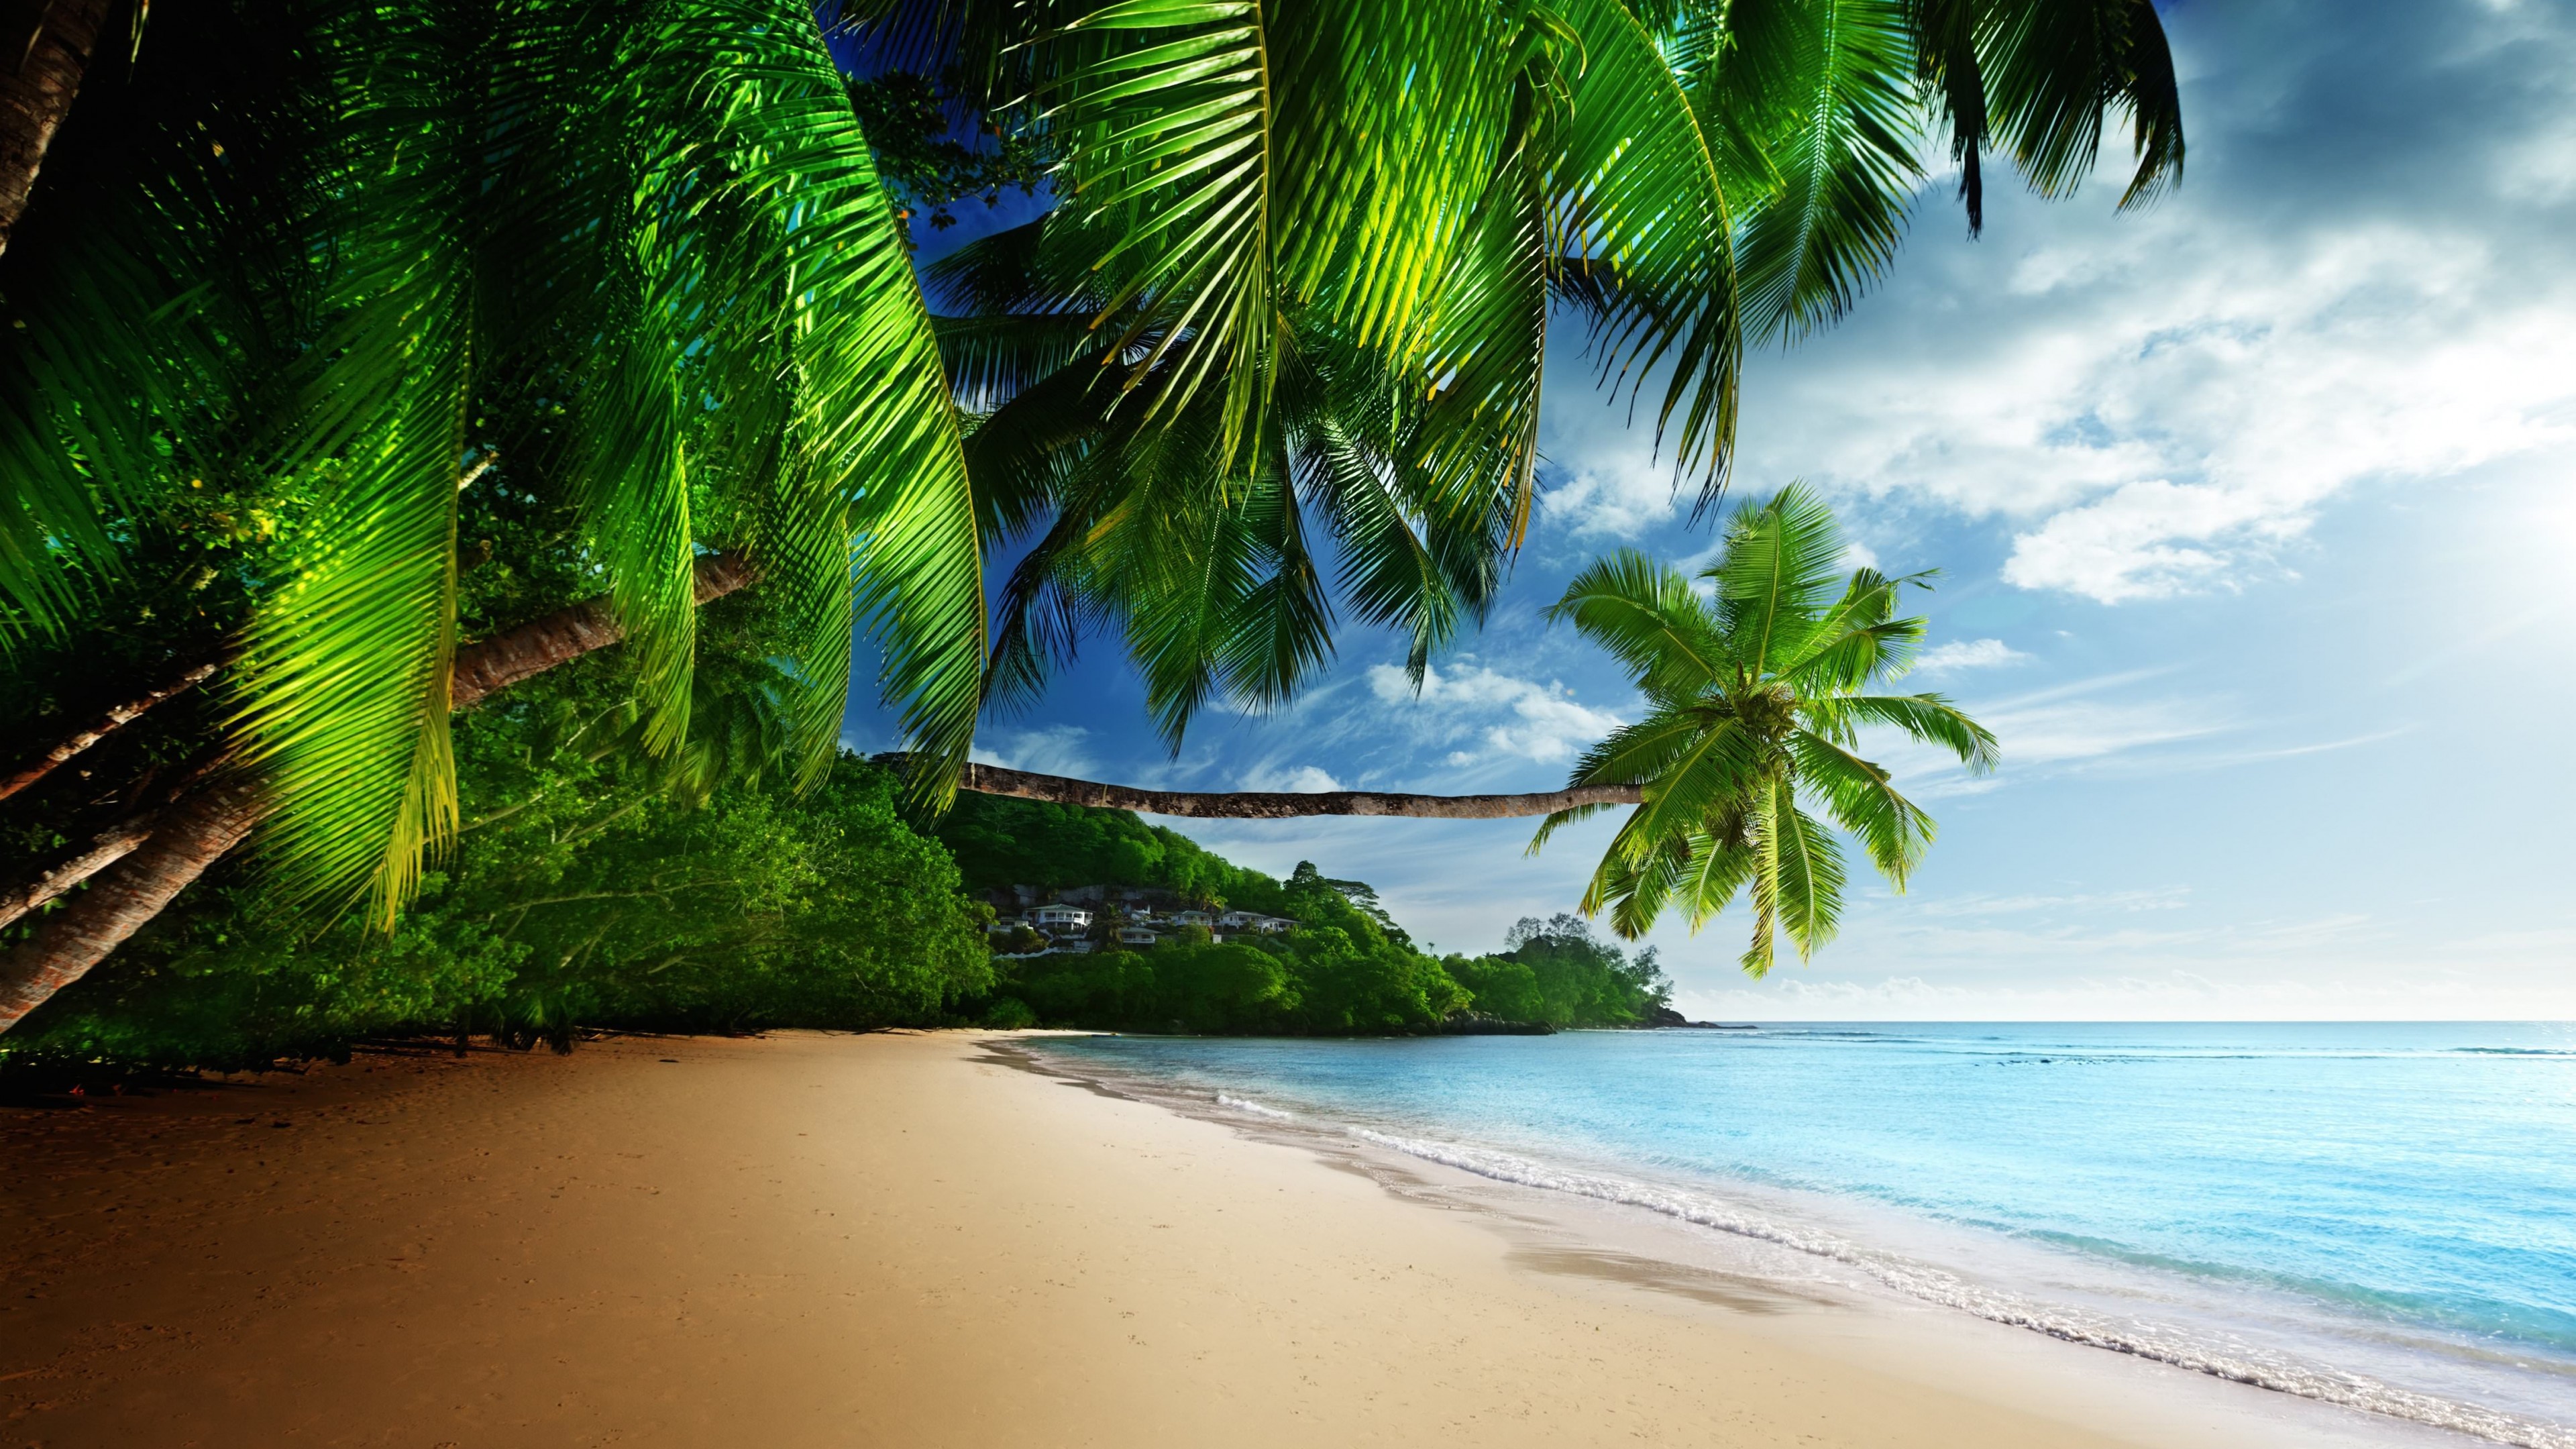  Paradise Beach HD wallpaper for 4K 3840 x 2160   HDwallpapersnet